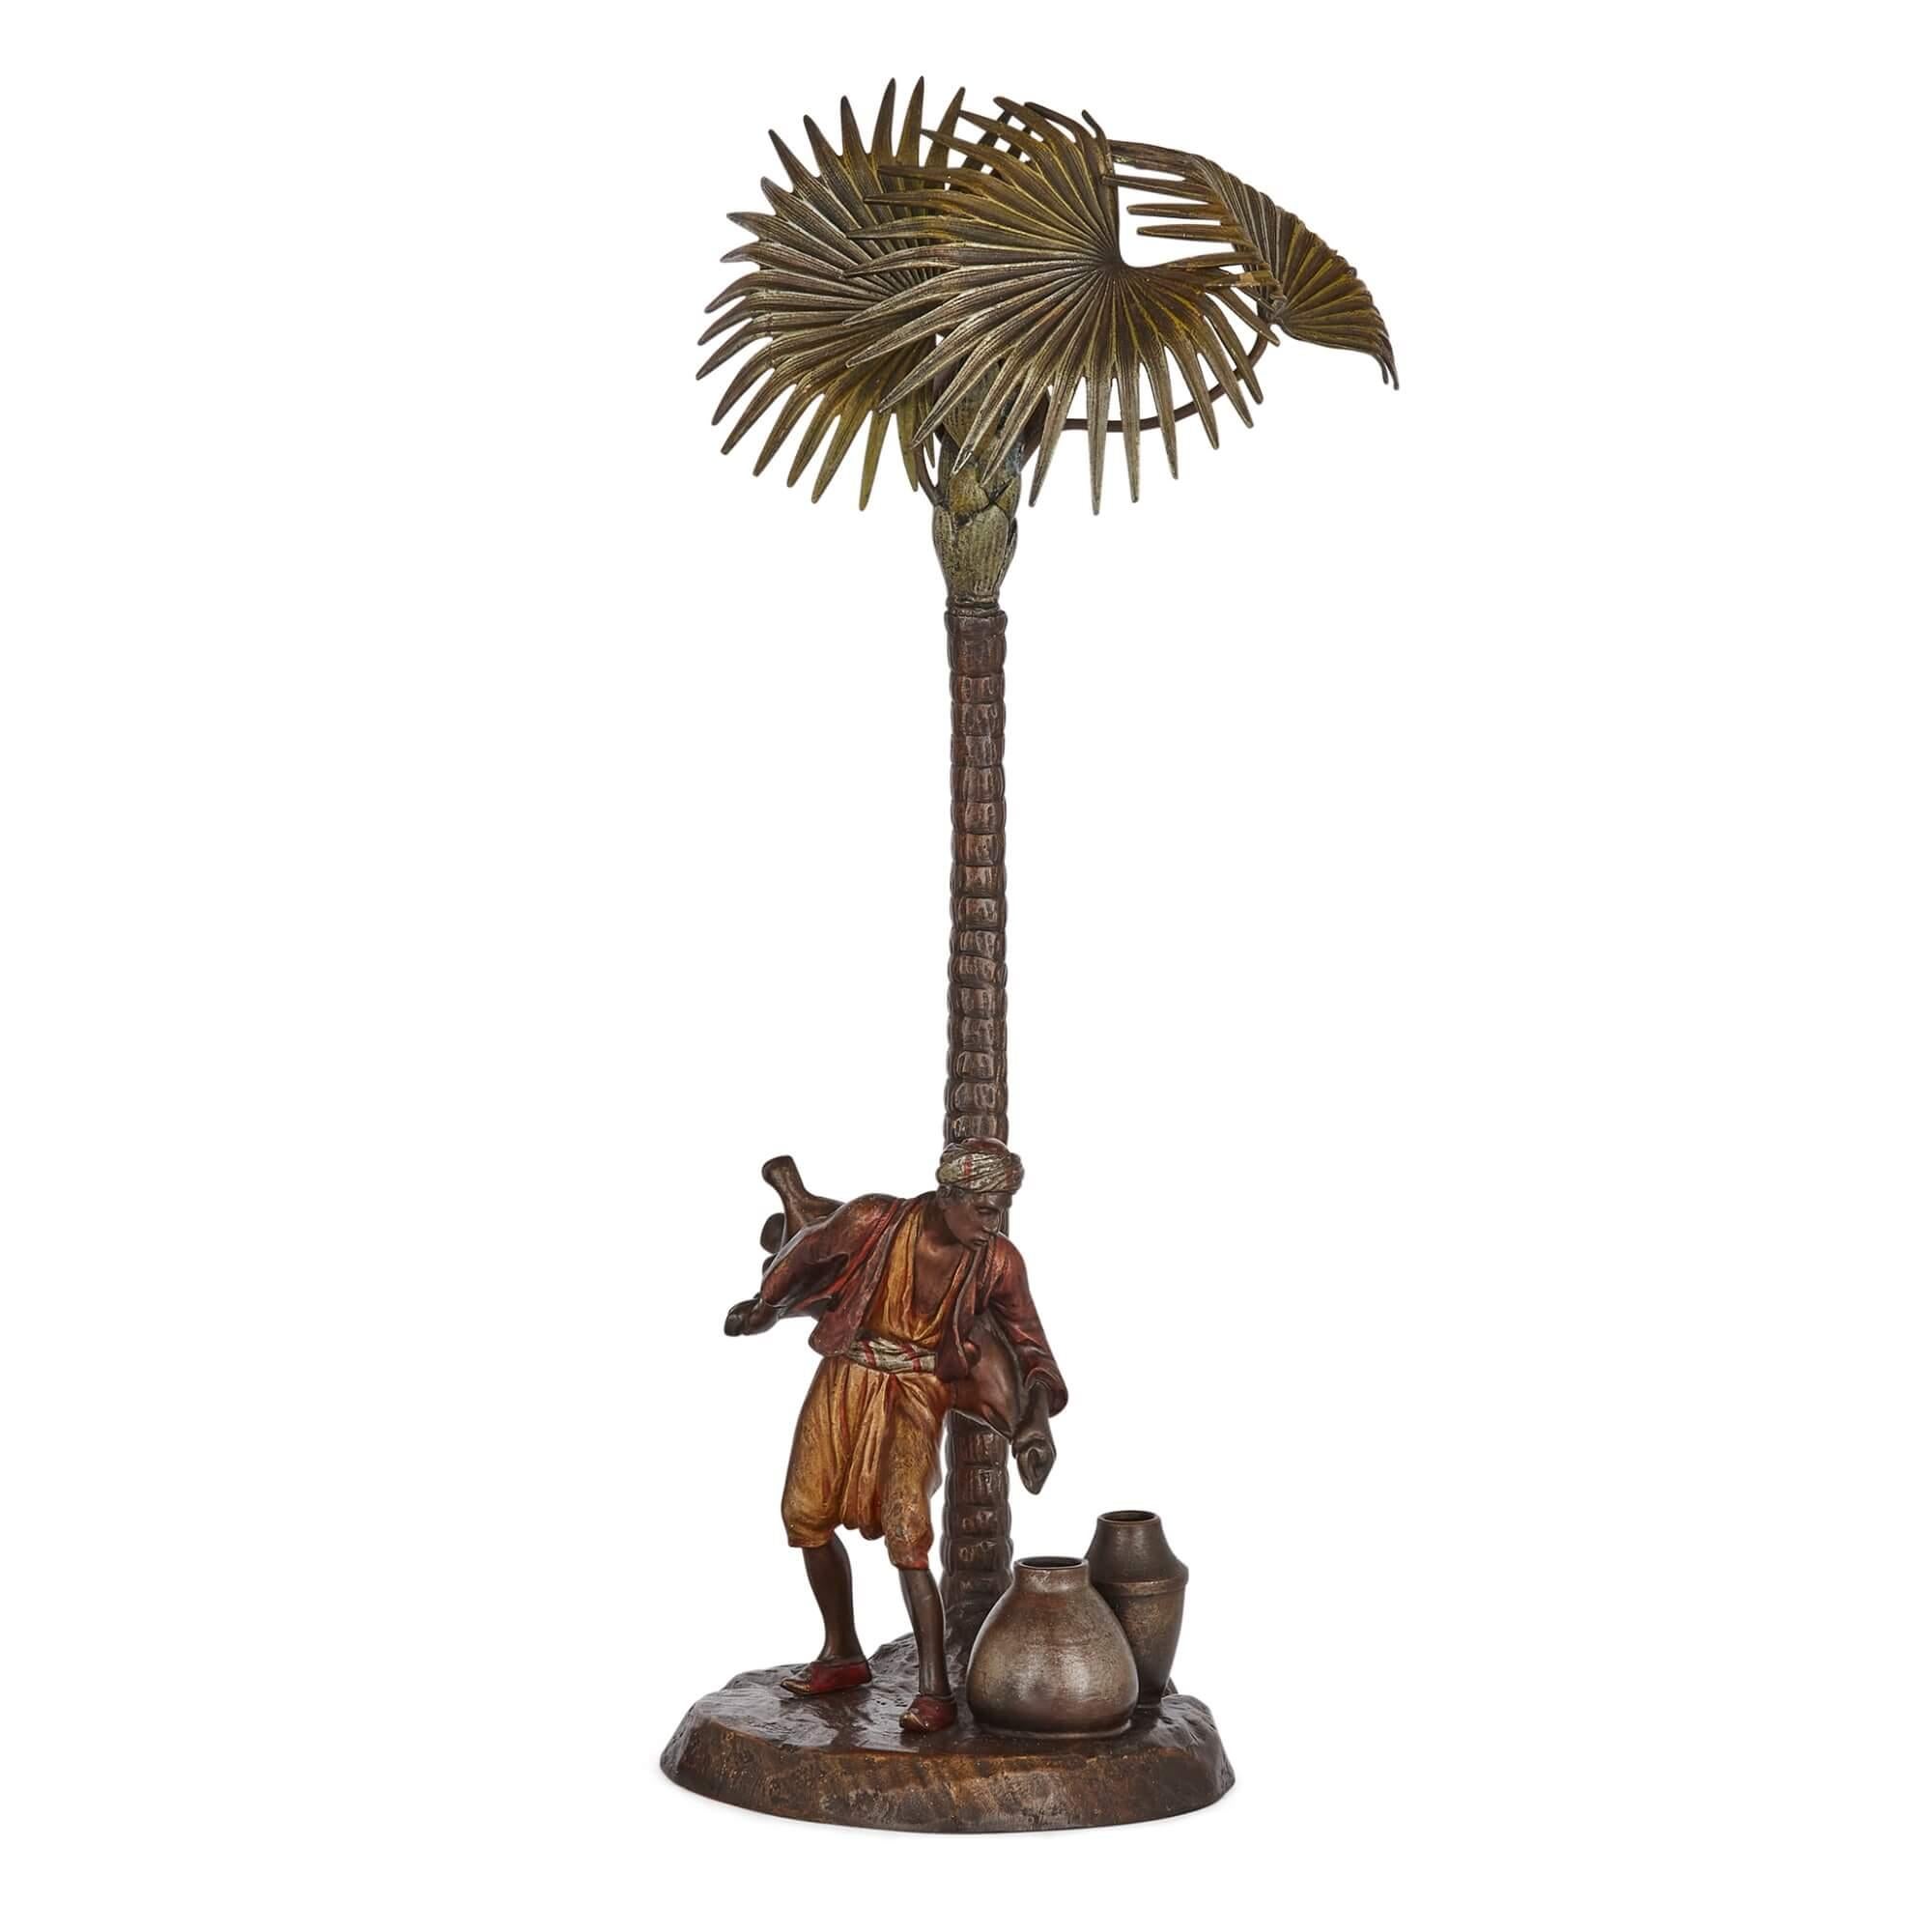 Grande lampe viennoise orientaliste en bronze peint à froid 
Autrichien, c.C. 1910
Hauteur 44cm, largeur 18cm, profondeur 15cm 

Cette excellente sculpture en bronze antique représente une scène simple mais très authentique.

La lampe représente un